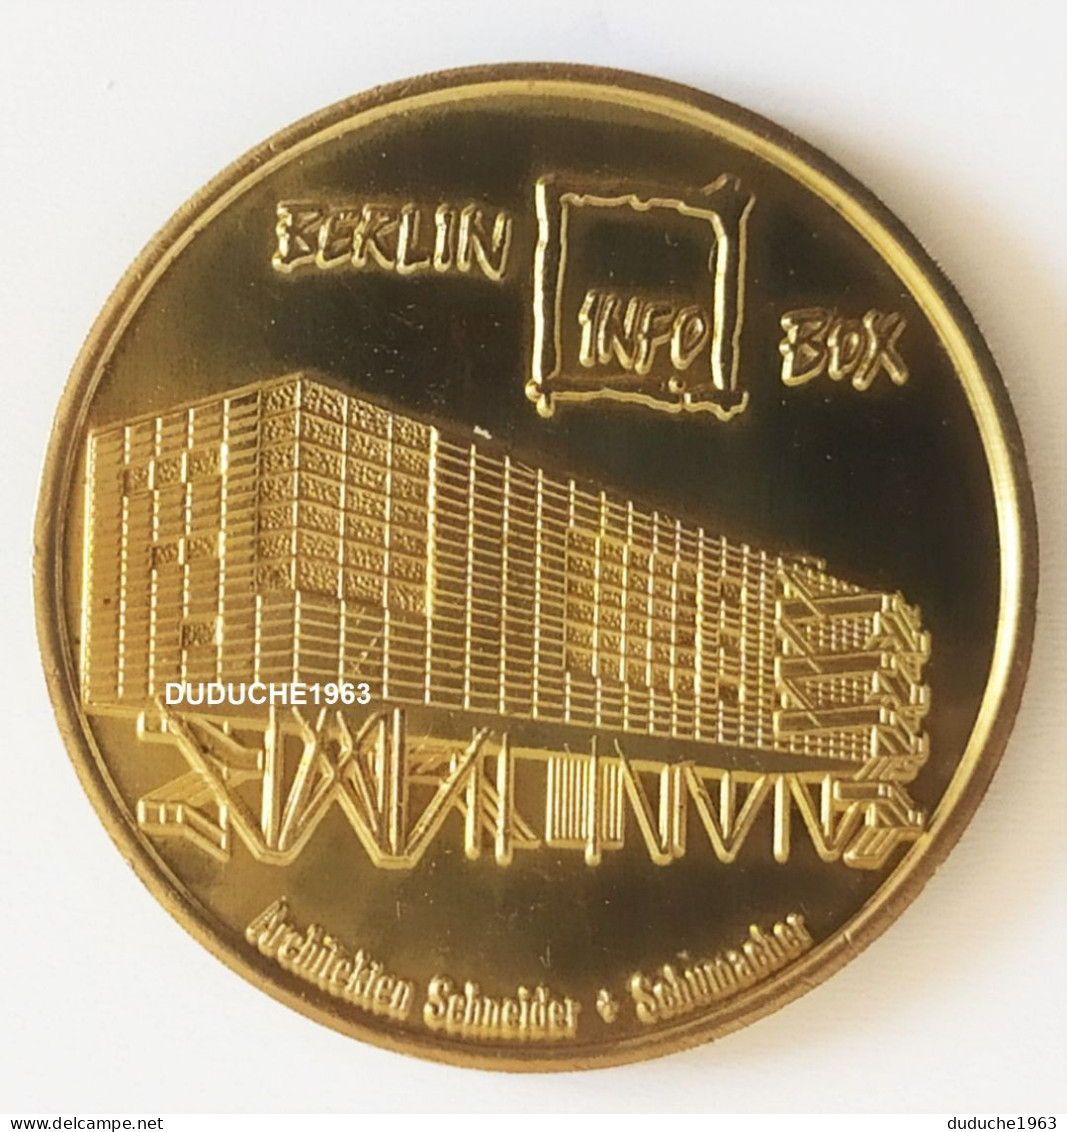 Monnaie De Paris. Allemagne - Berlin - Globe Taler Infobox Fernsehturm 1997/1998 - Undated